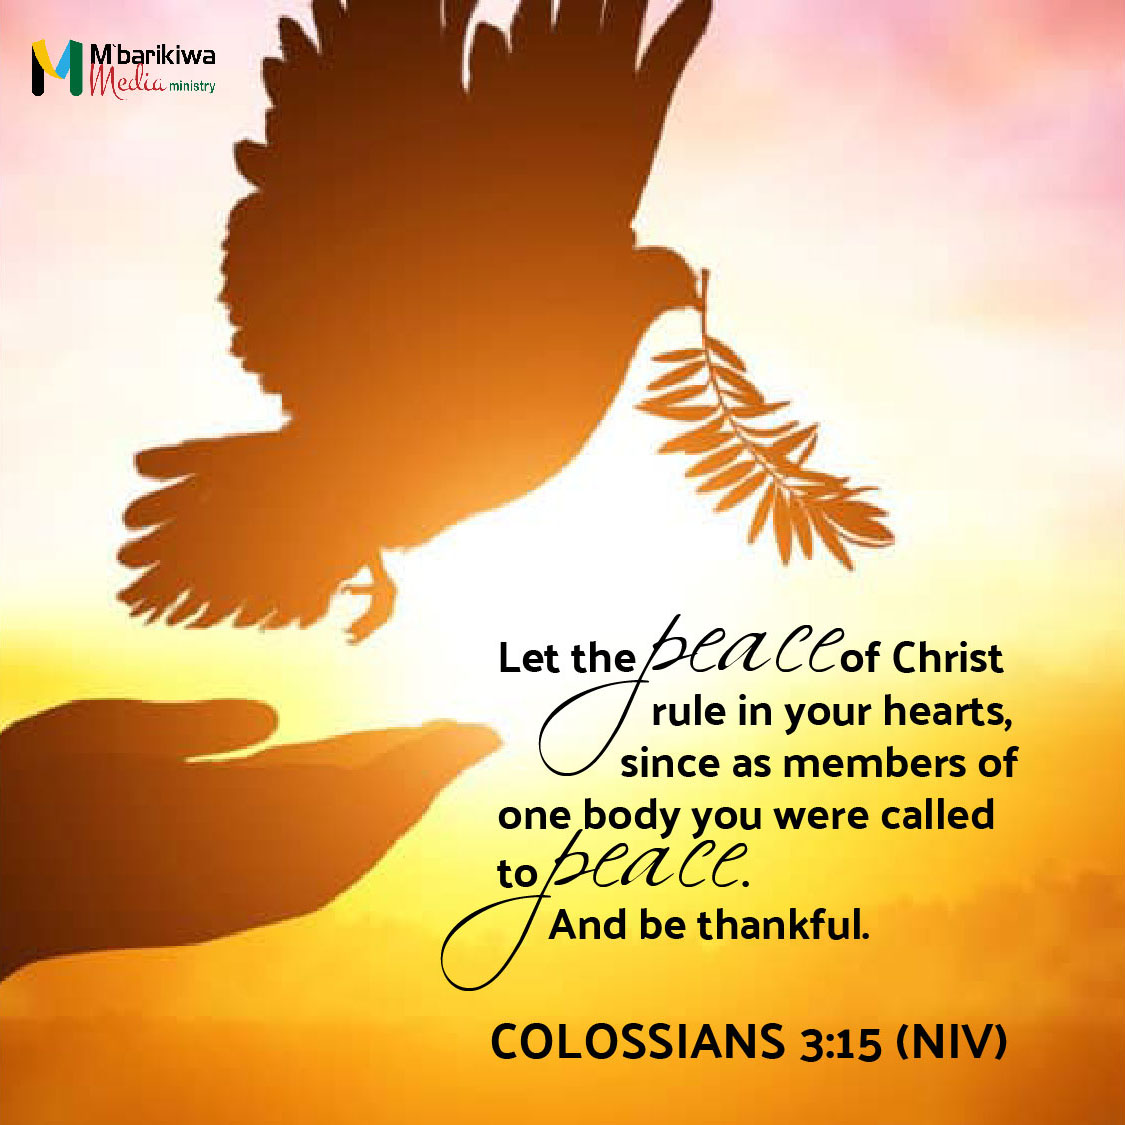 Colossians 3:15 (NIV)